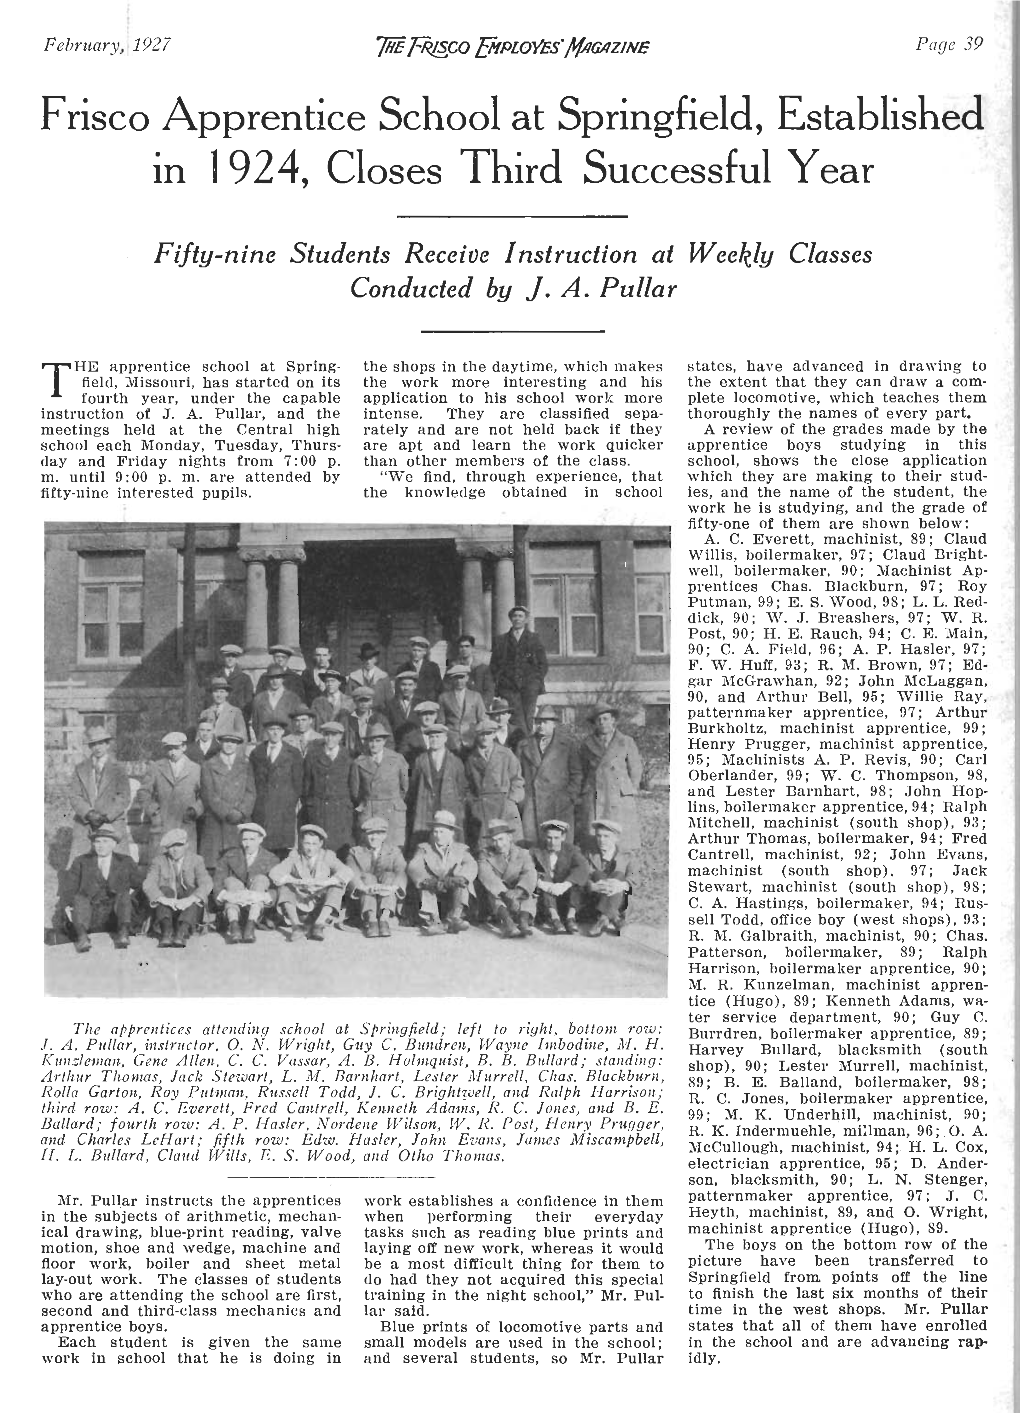 The Frisco Employes' Magazine, February 1927